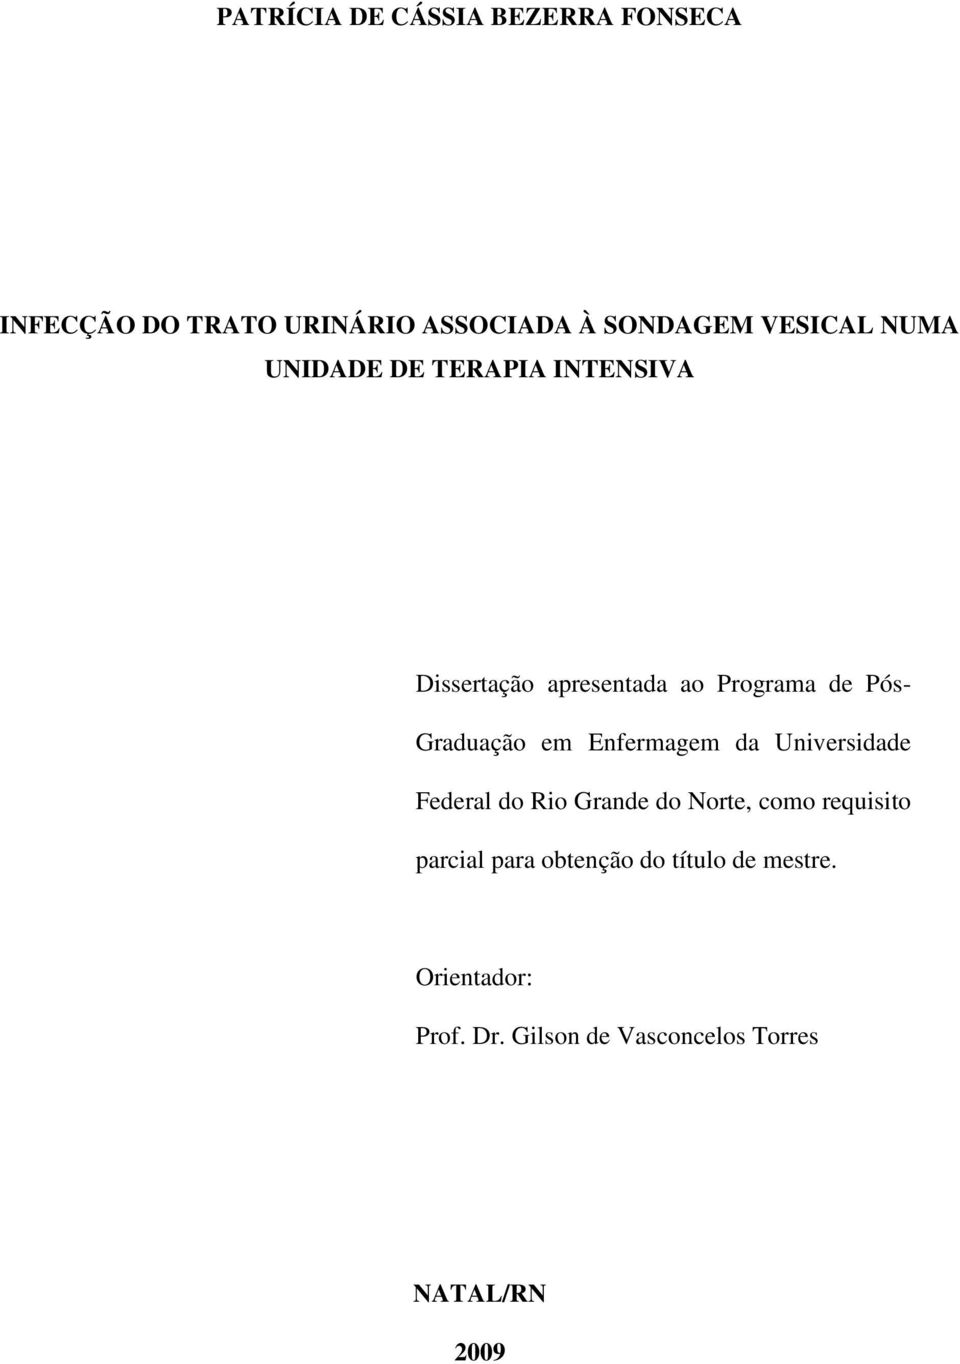 Enfermagem da Universidade Federal do Rio Grande do Norte, como requisito parcial para